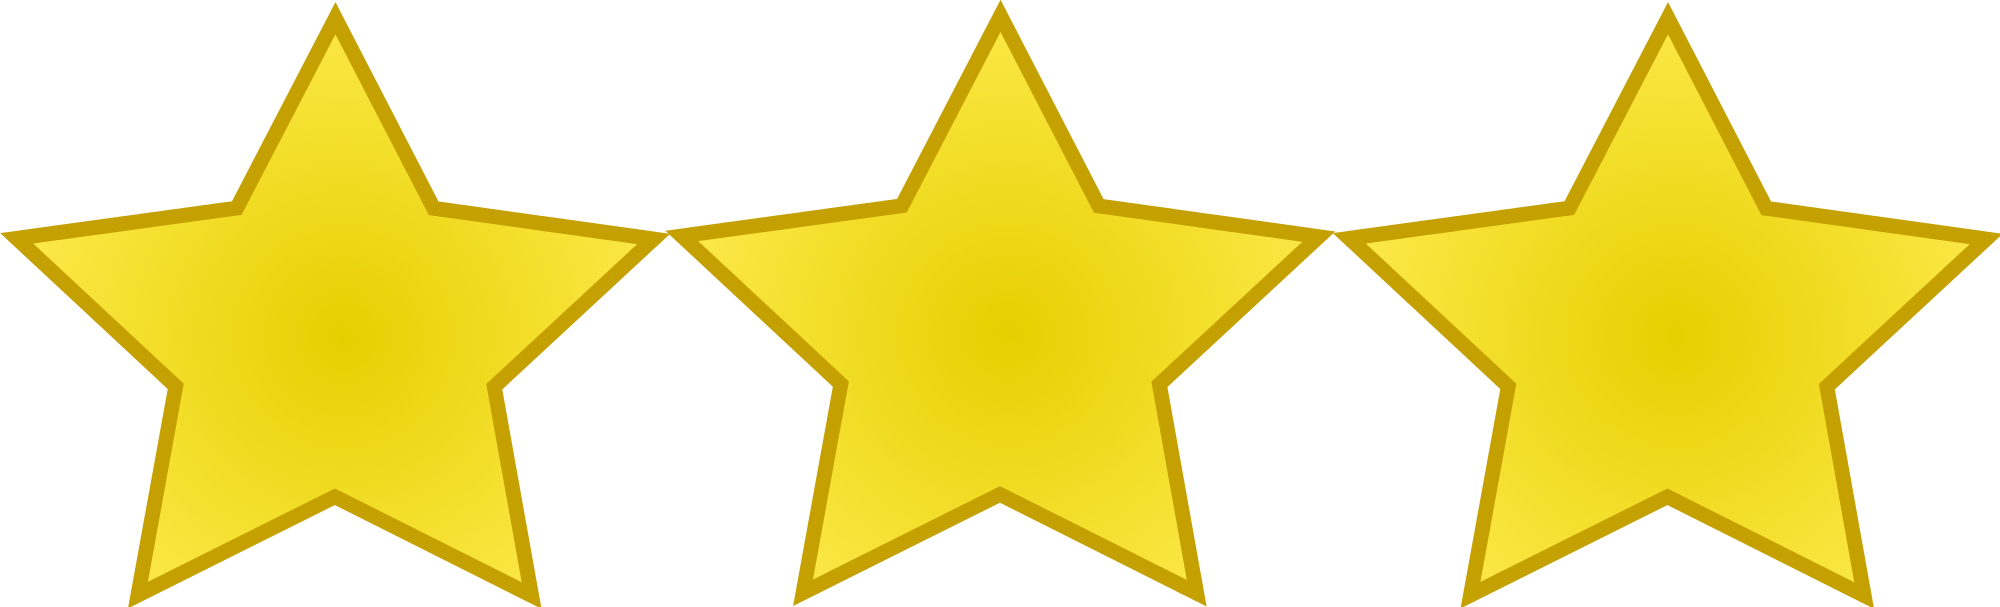 File:Emblem-stars-3.svg